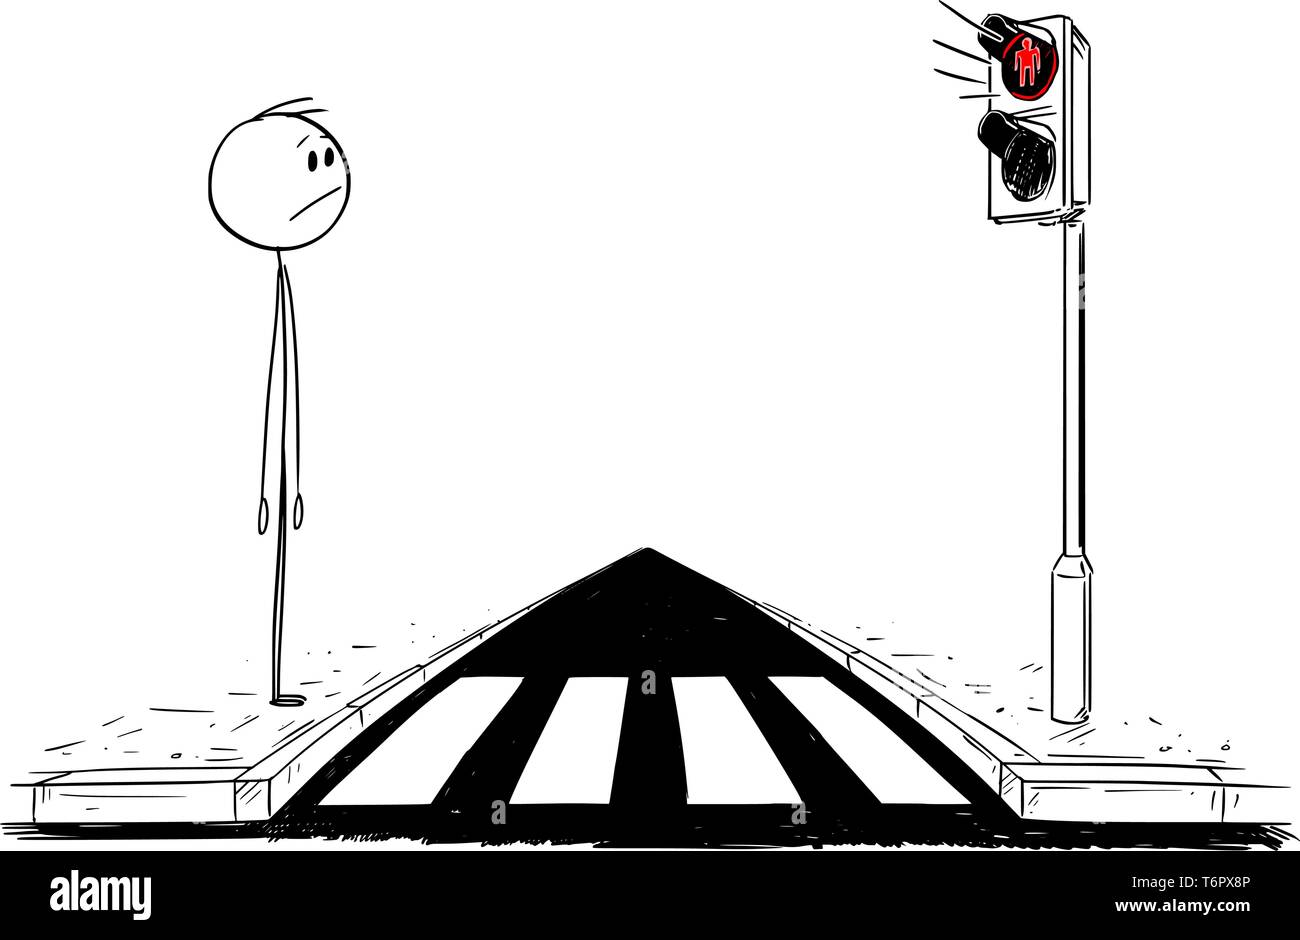 Cartoon stick figure dessin illustration conceptuelle de l'homme sur l'attente ou de passage de piétons pour feu vert sur les feux.Le voyant rouge est allumé. Illustration de Vecteur